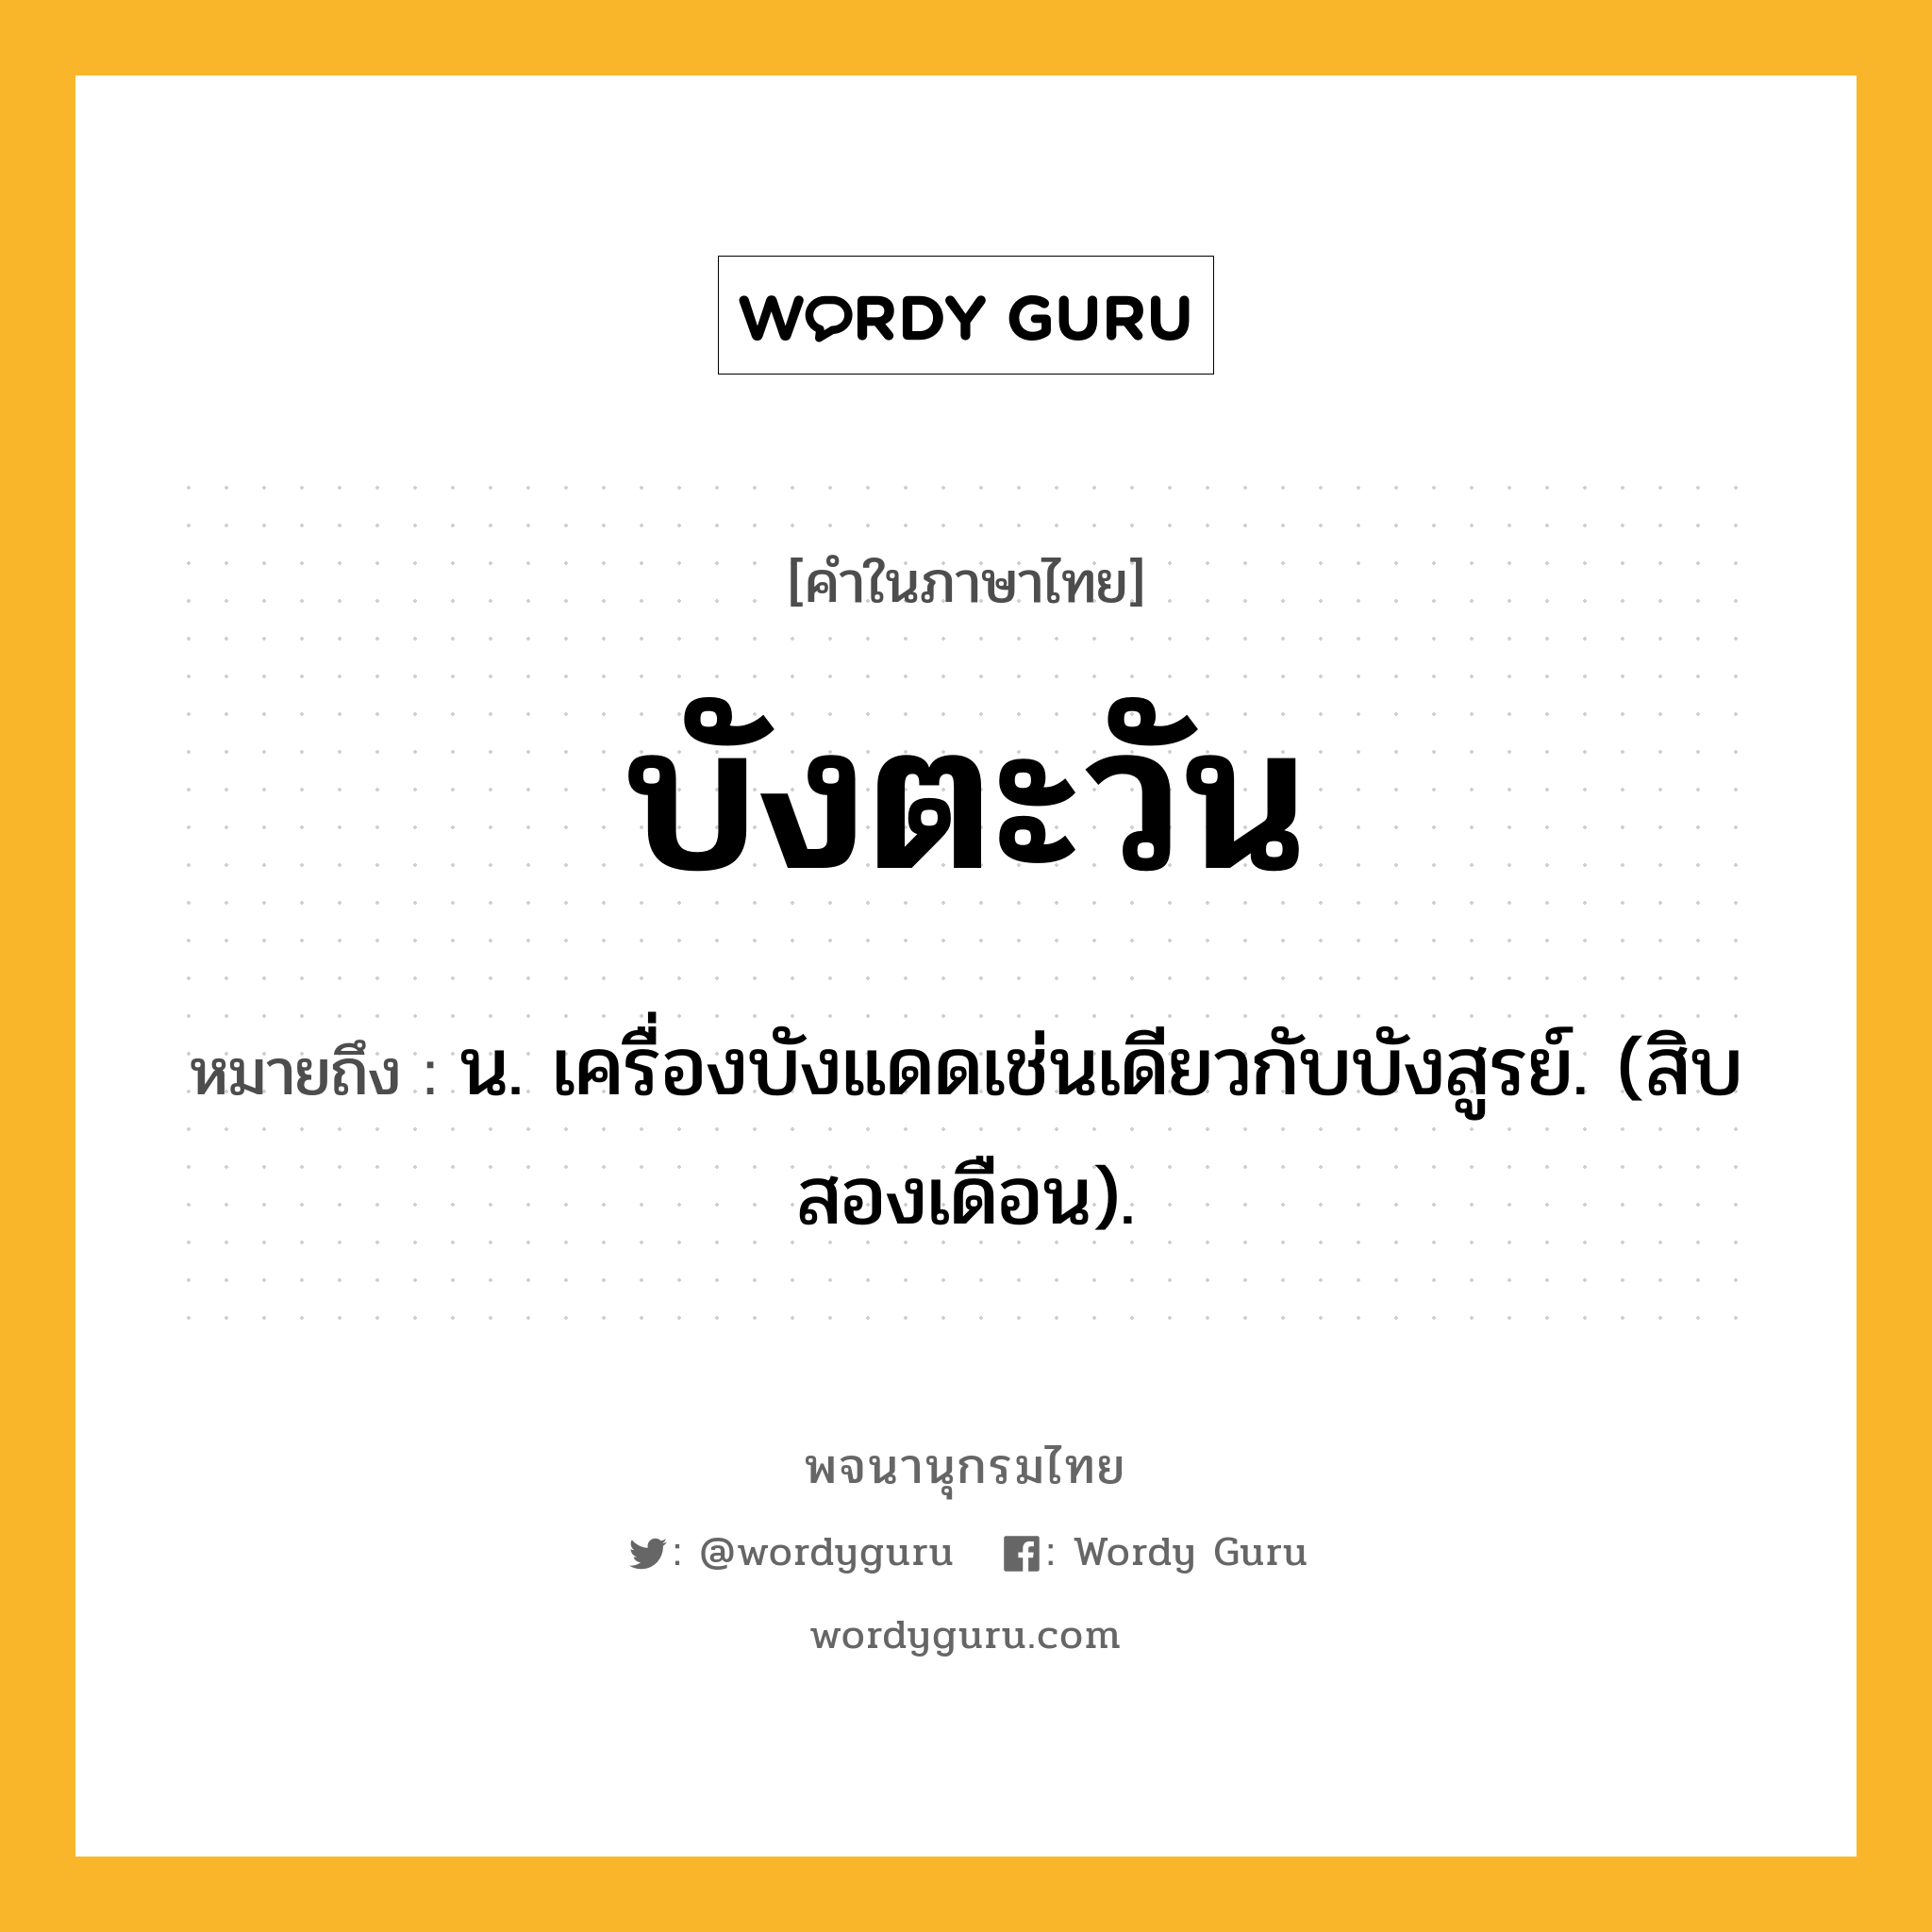 บังตะวัน หมายถึงอะไร?, คำในภาษาไทย บังตะวัน หมายถึง น. เครื่องบังแดดเช่นเดียวกับบังสูรย์. (สิบสองเดือน).